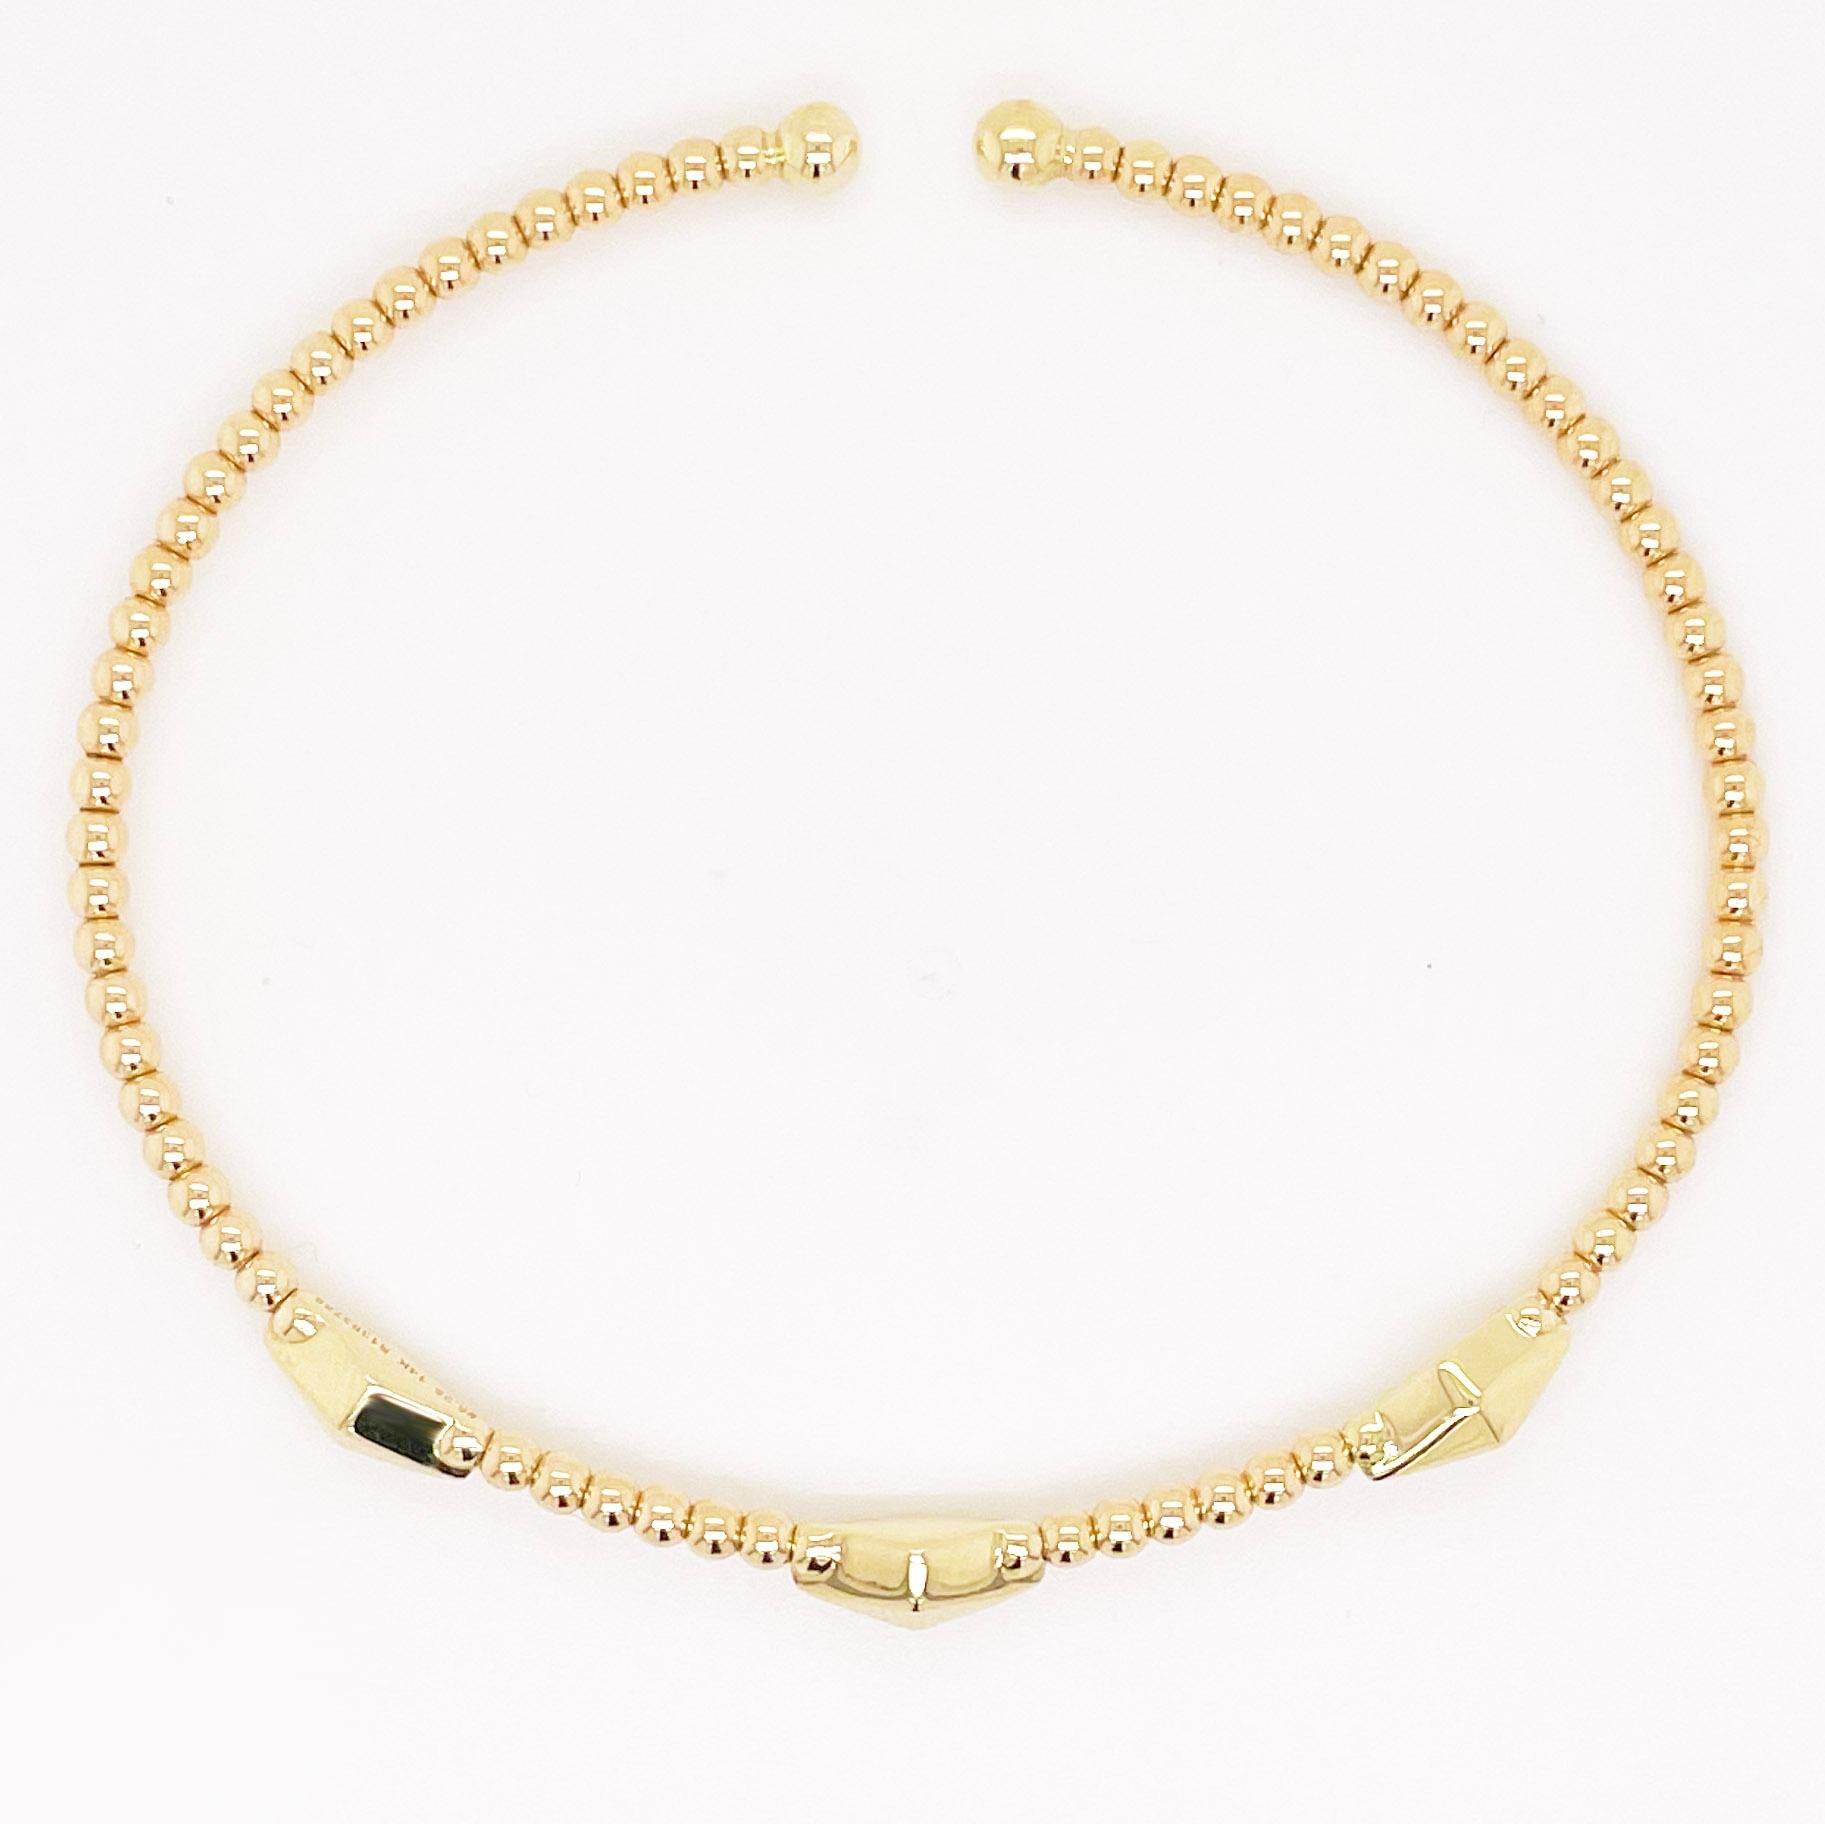 Vous trouverez ci-dessous les détails de ce magnifique bracelet :

Type de bracelet : Bracelet, Manchette
Qualité du métal : Or jaune 14K
Longueur : 6 cm (disponible en 3 tailles)
Largeur : 2,19 - 4,12 millimètres
Fermoir : Bangle flexible
Taille du